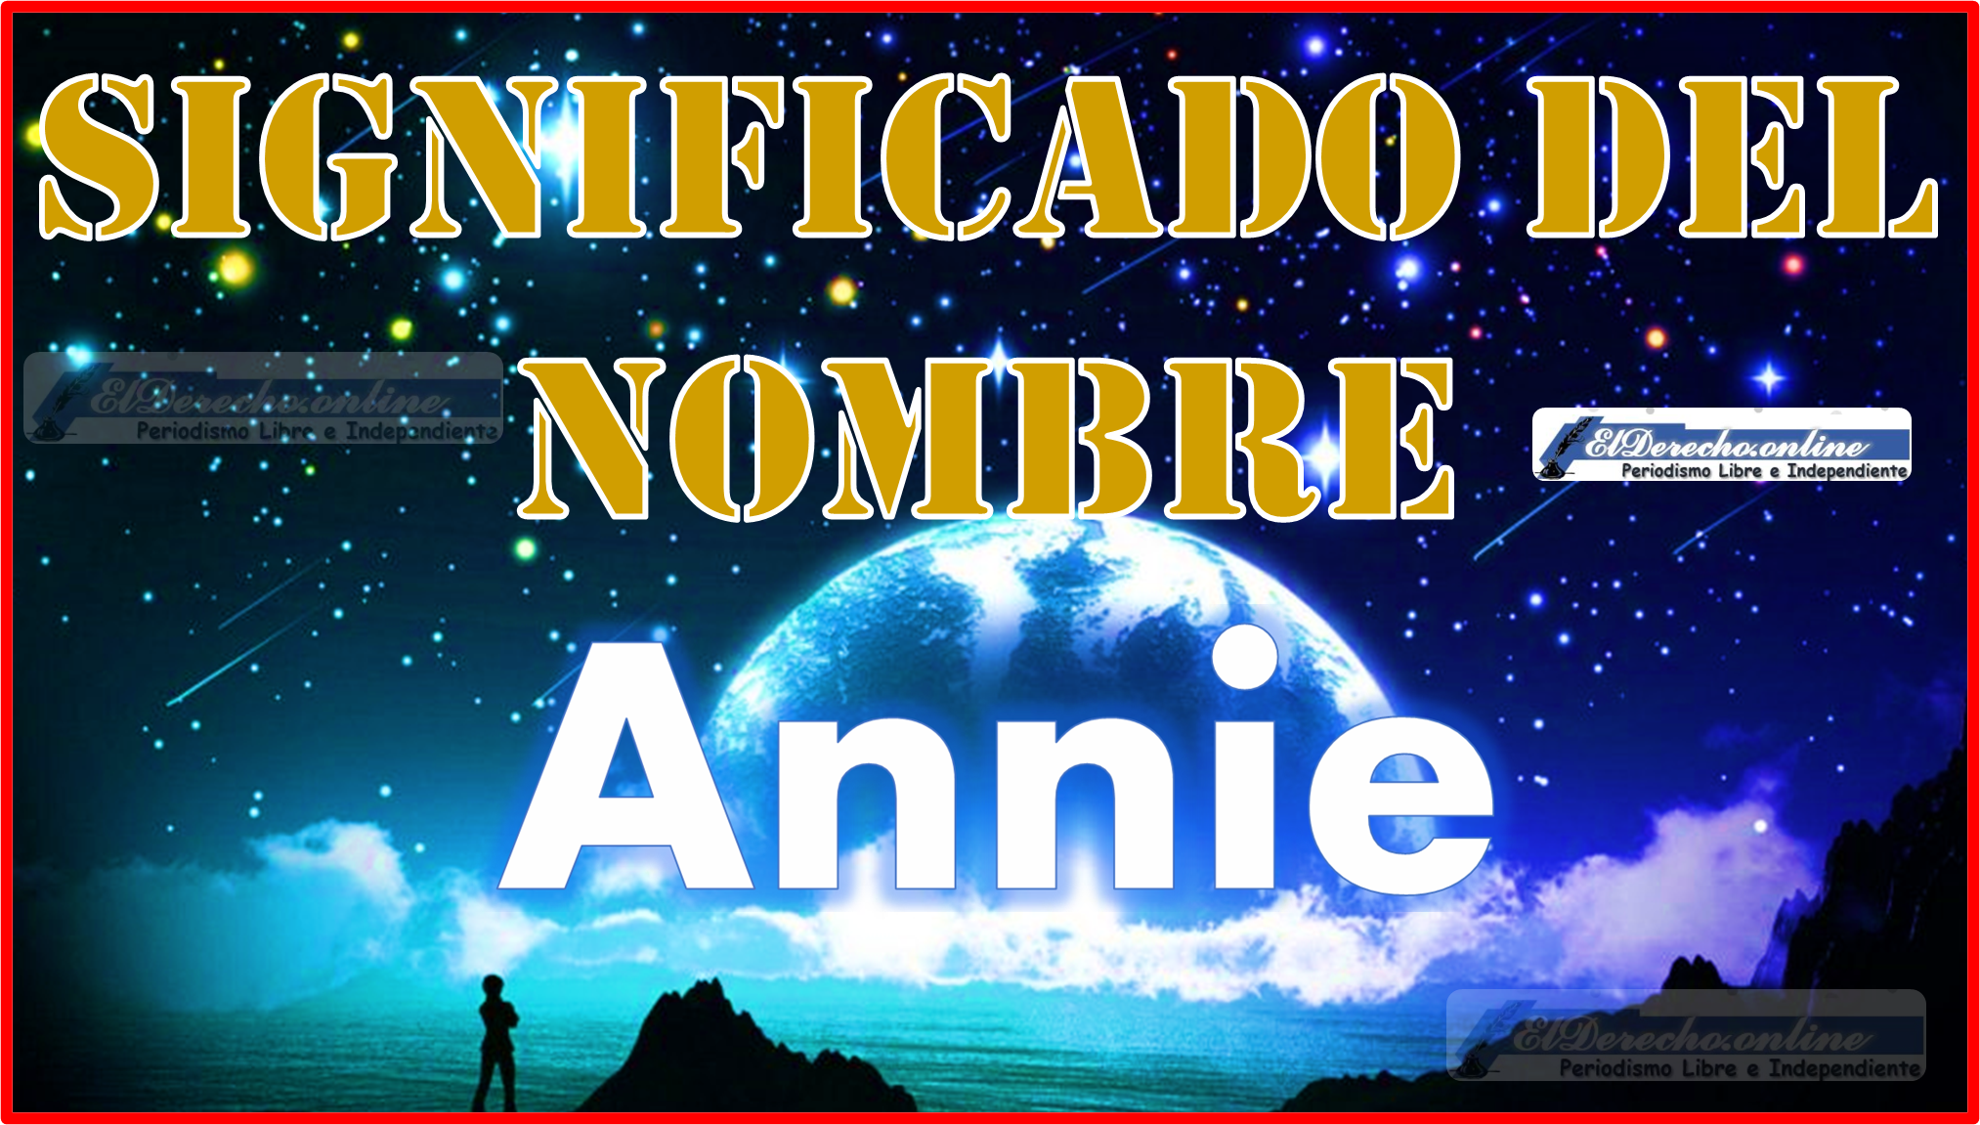 Significado del nombre Annie, su origen y más